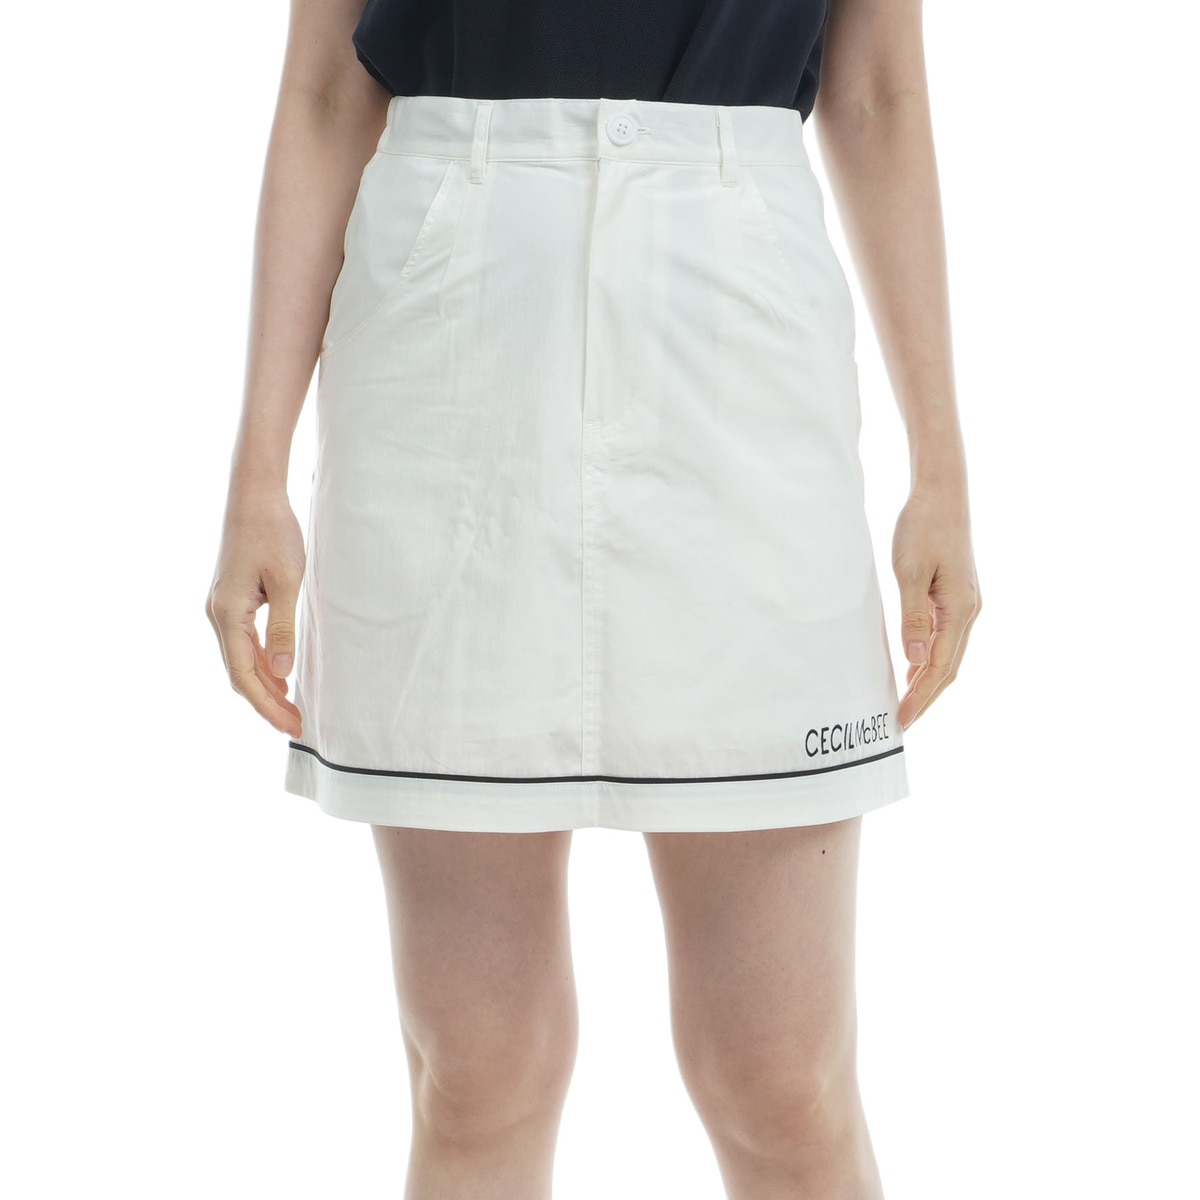 CECIL McBEE ミニスカート Mサイズ - スカート